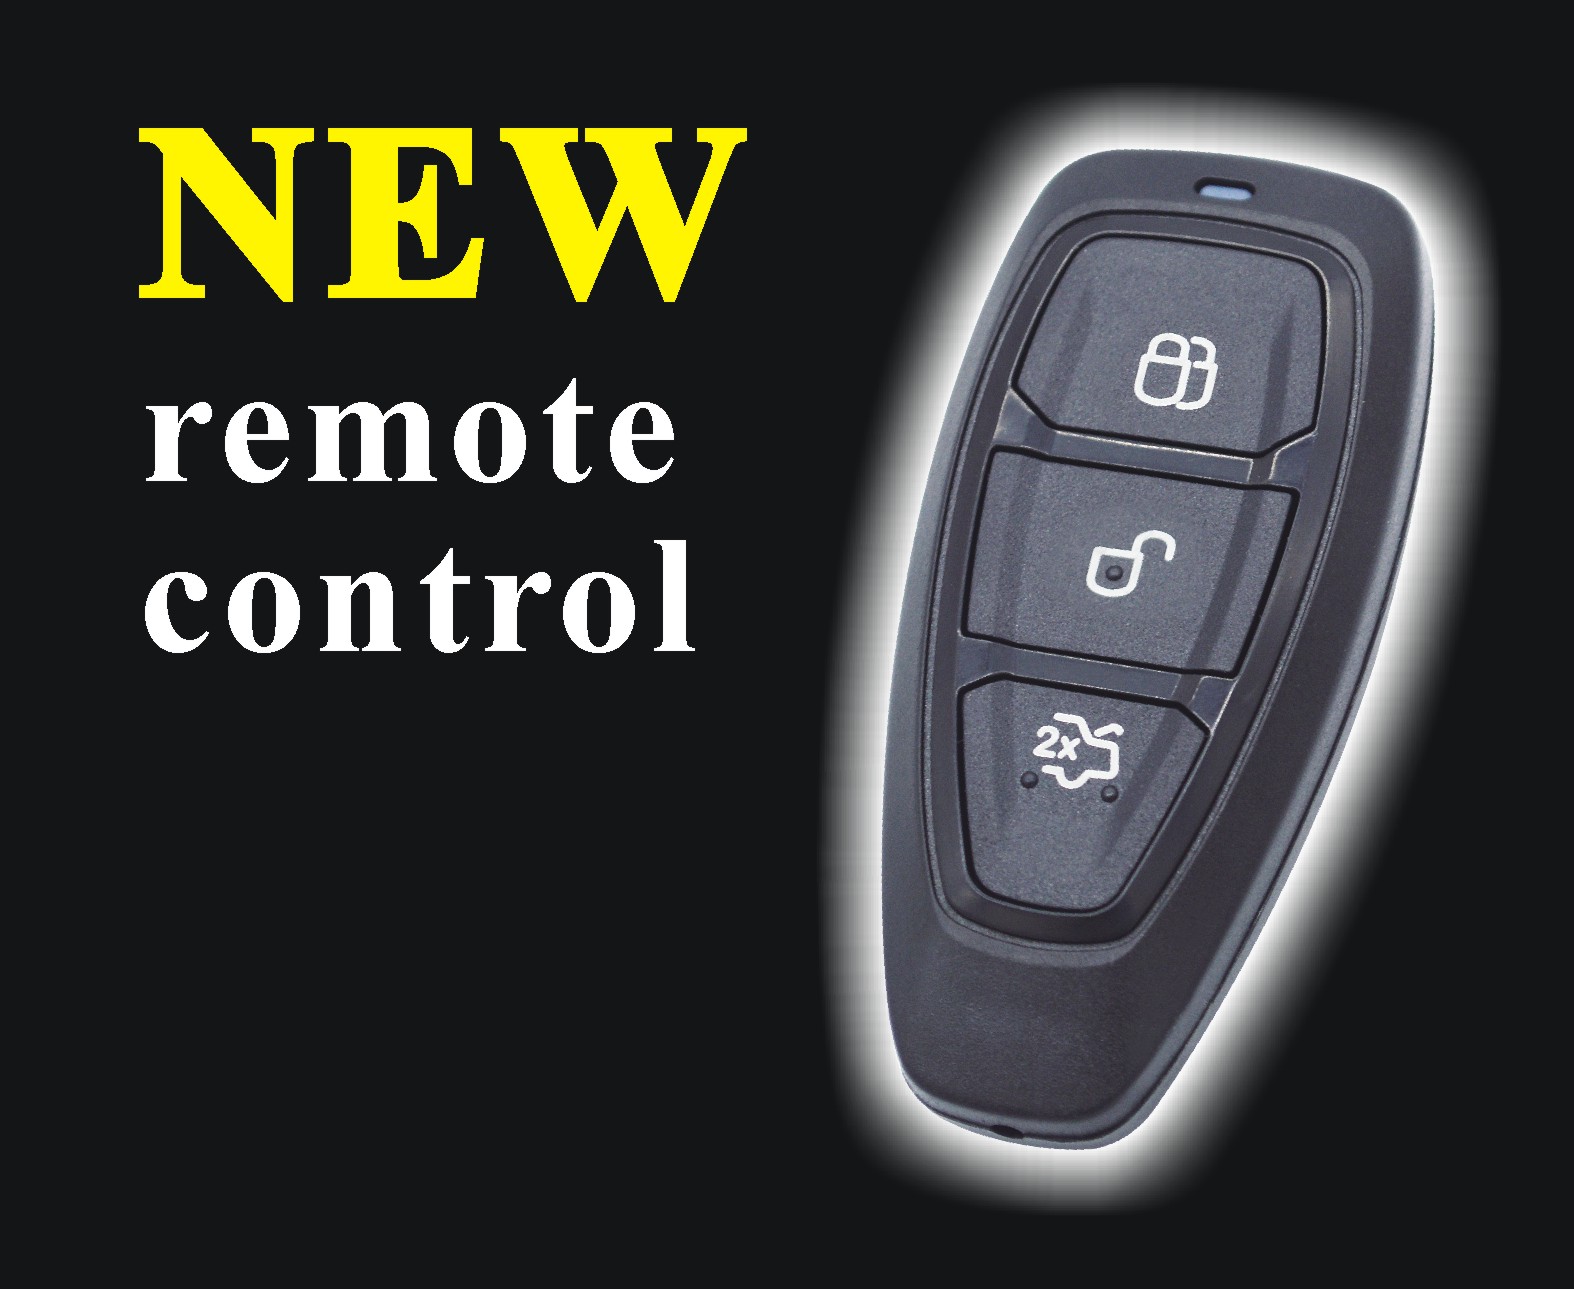 New remote control